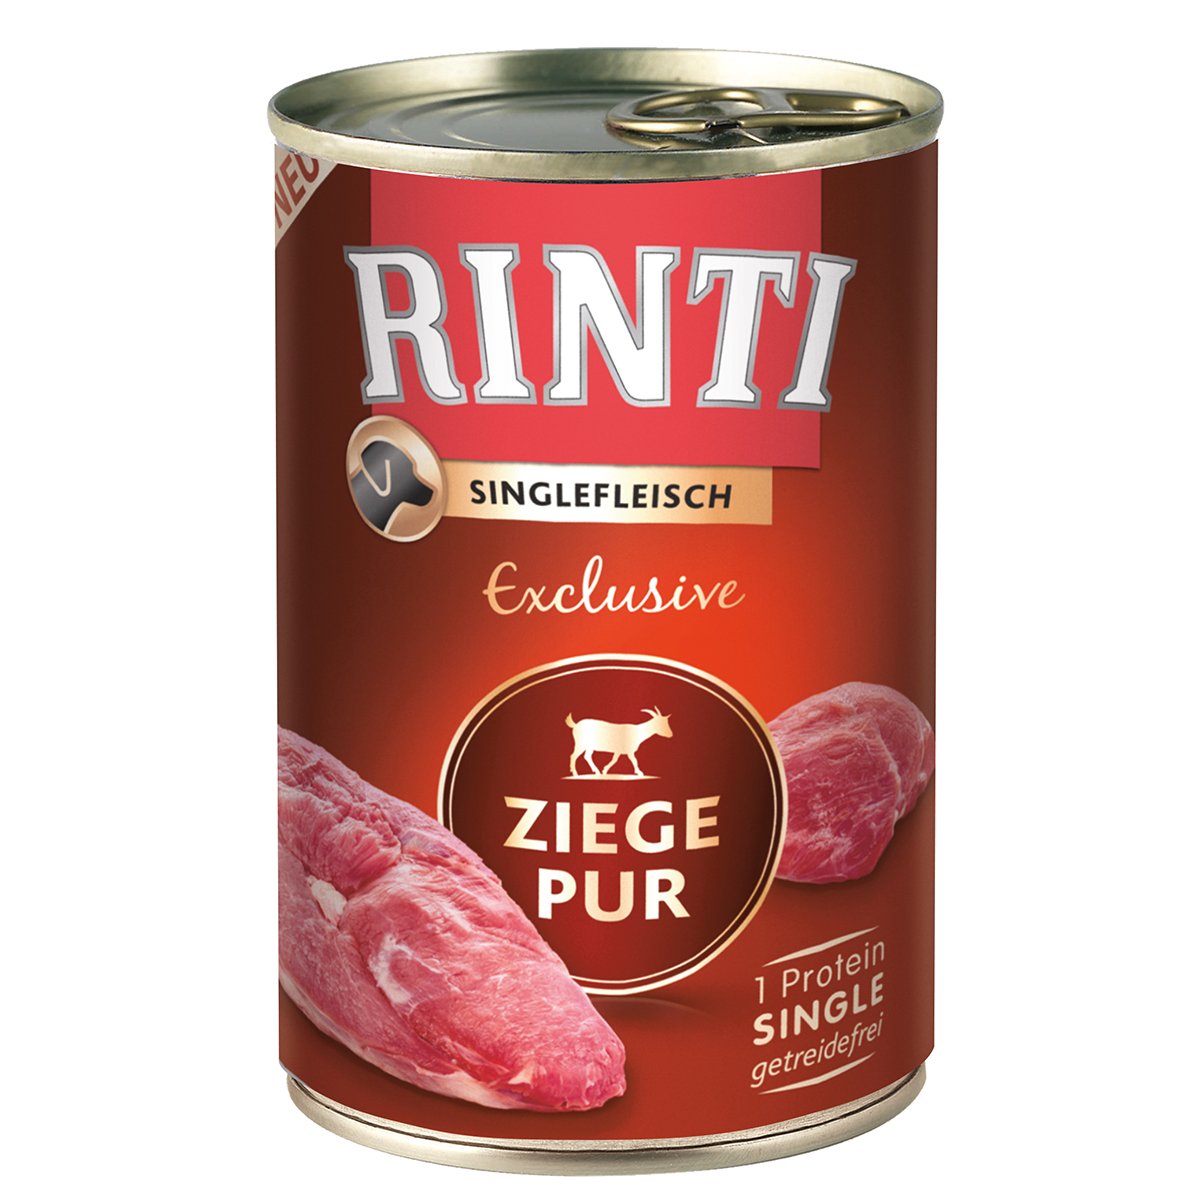 Rinti Singlefleisch Exclusive Ziege pur 24x400g